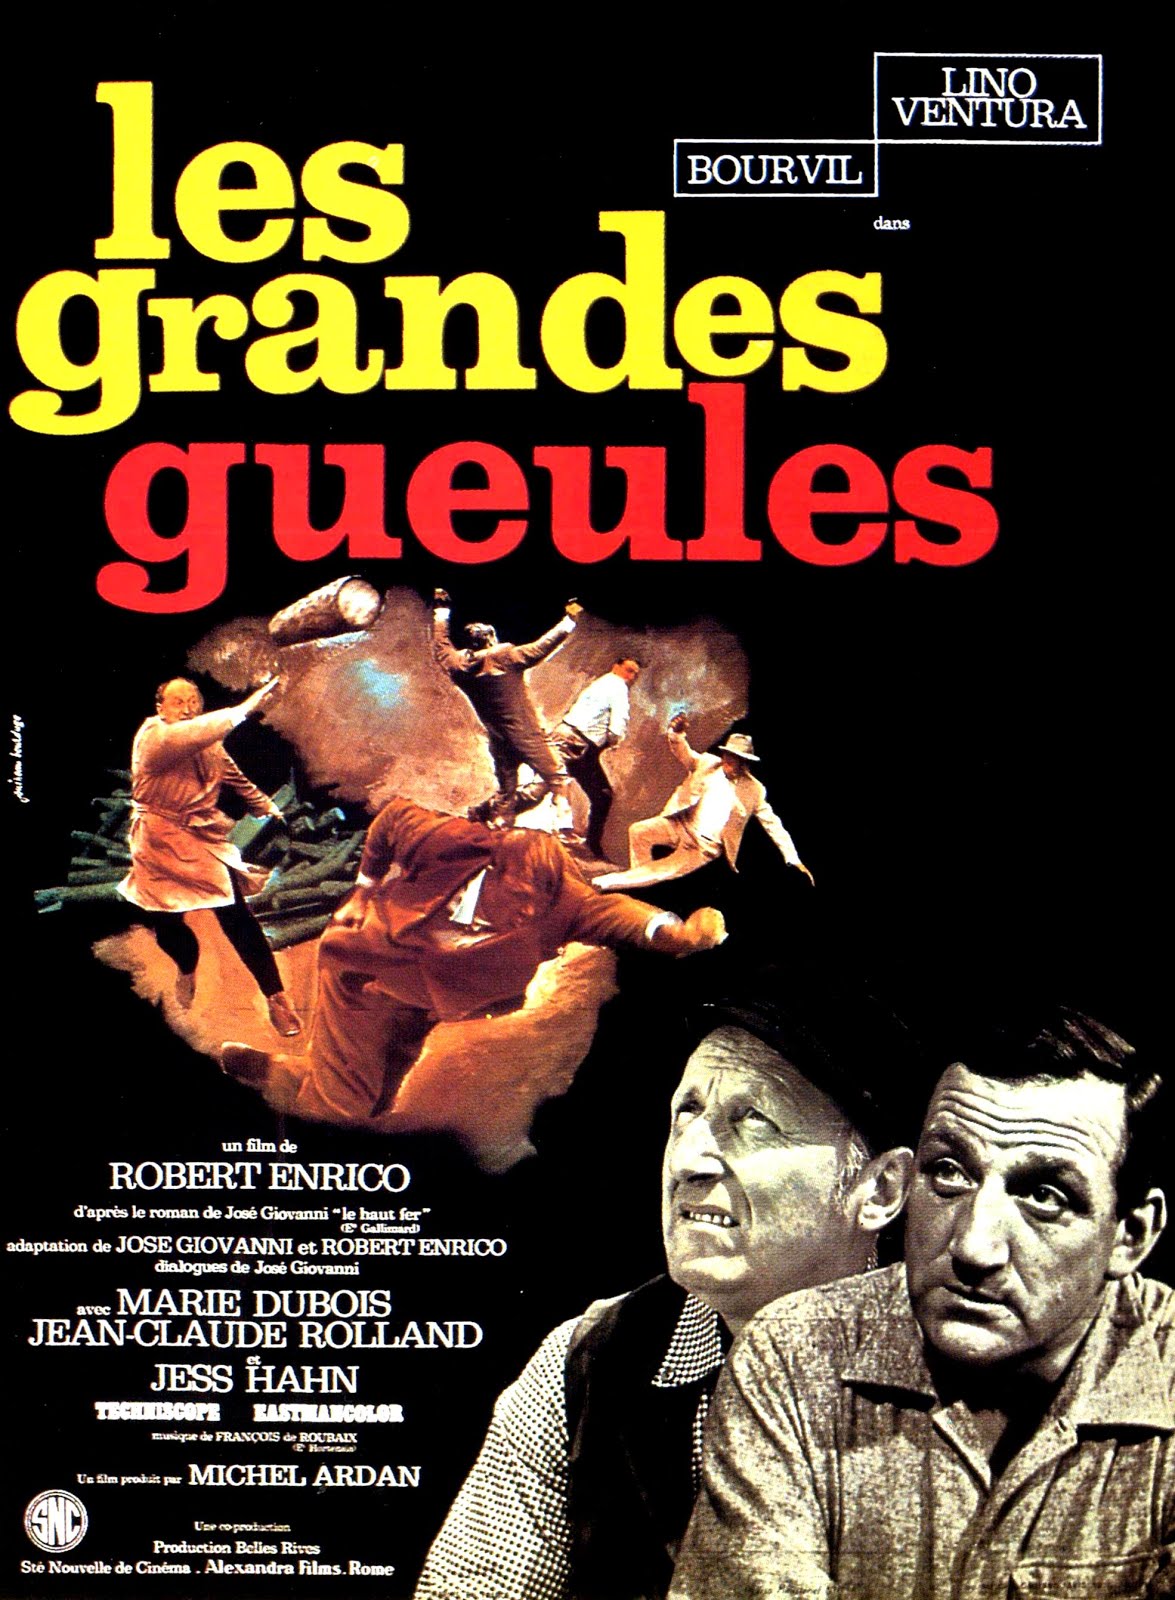 Les grandes gueules (1965) Robert Enrico - Les grandes gueules (14.04.1965 / 20.07.1965)